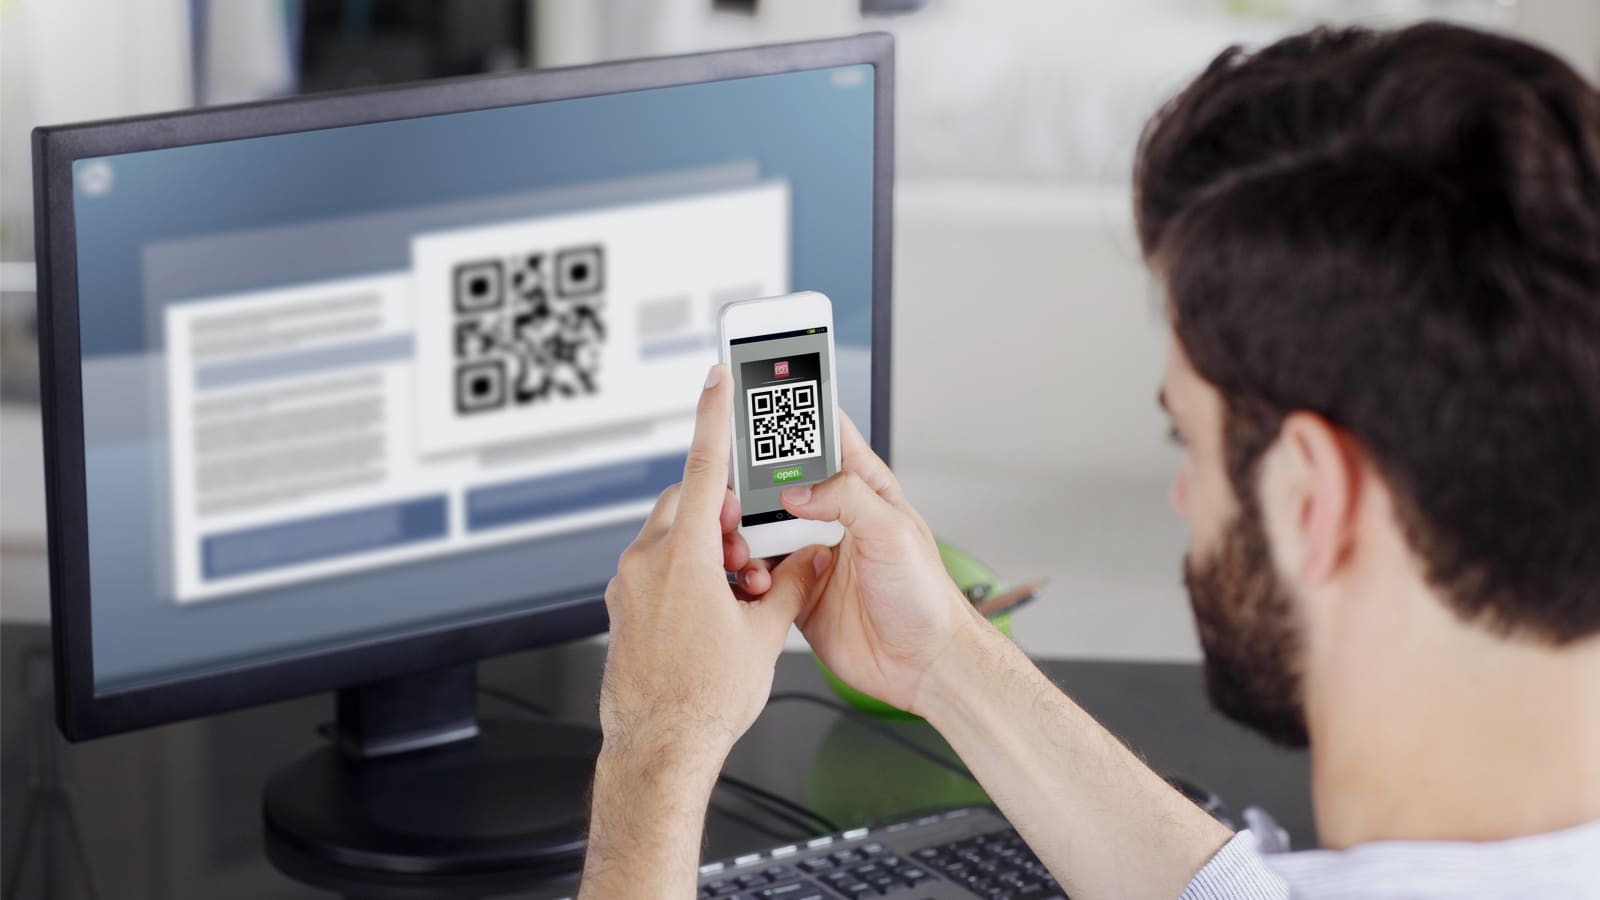 Ein Mann scannt einen QR-Code mit seinem Smartphone, um Informationen zu erhalten.